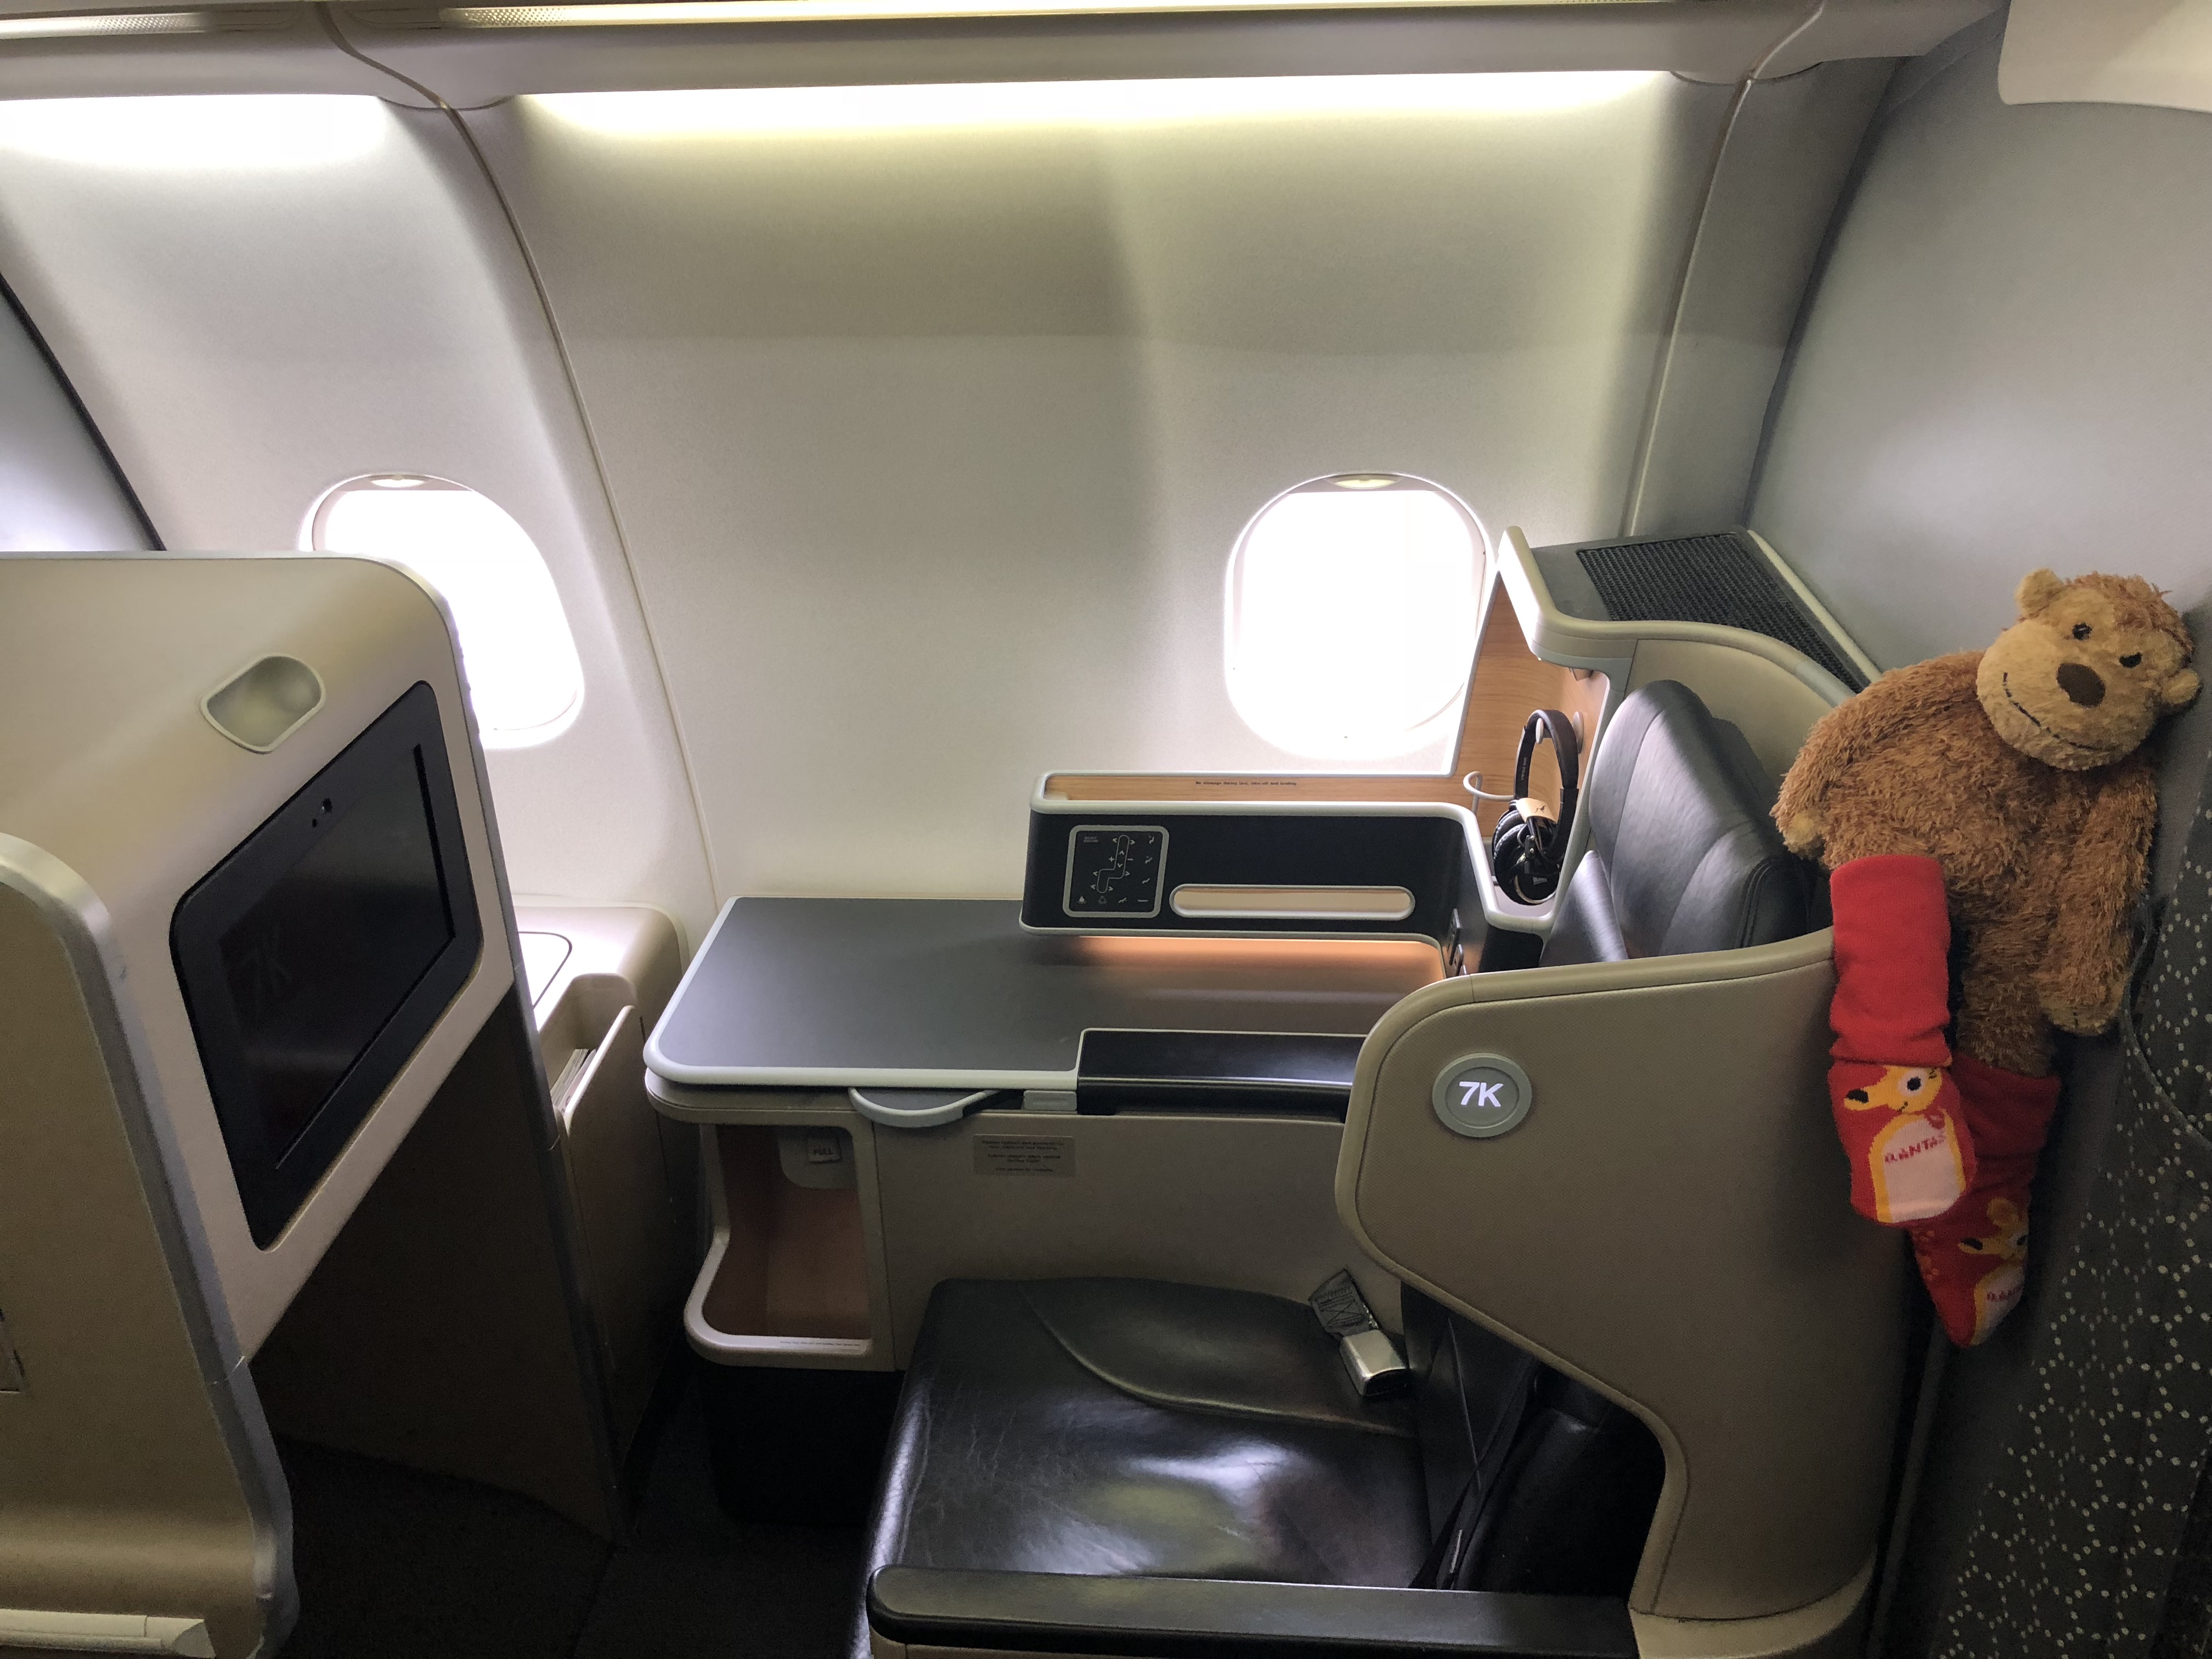 a teddy bear in a chair in an airplane